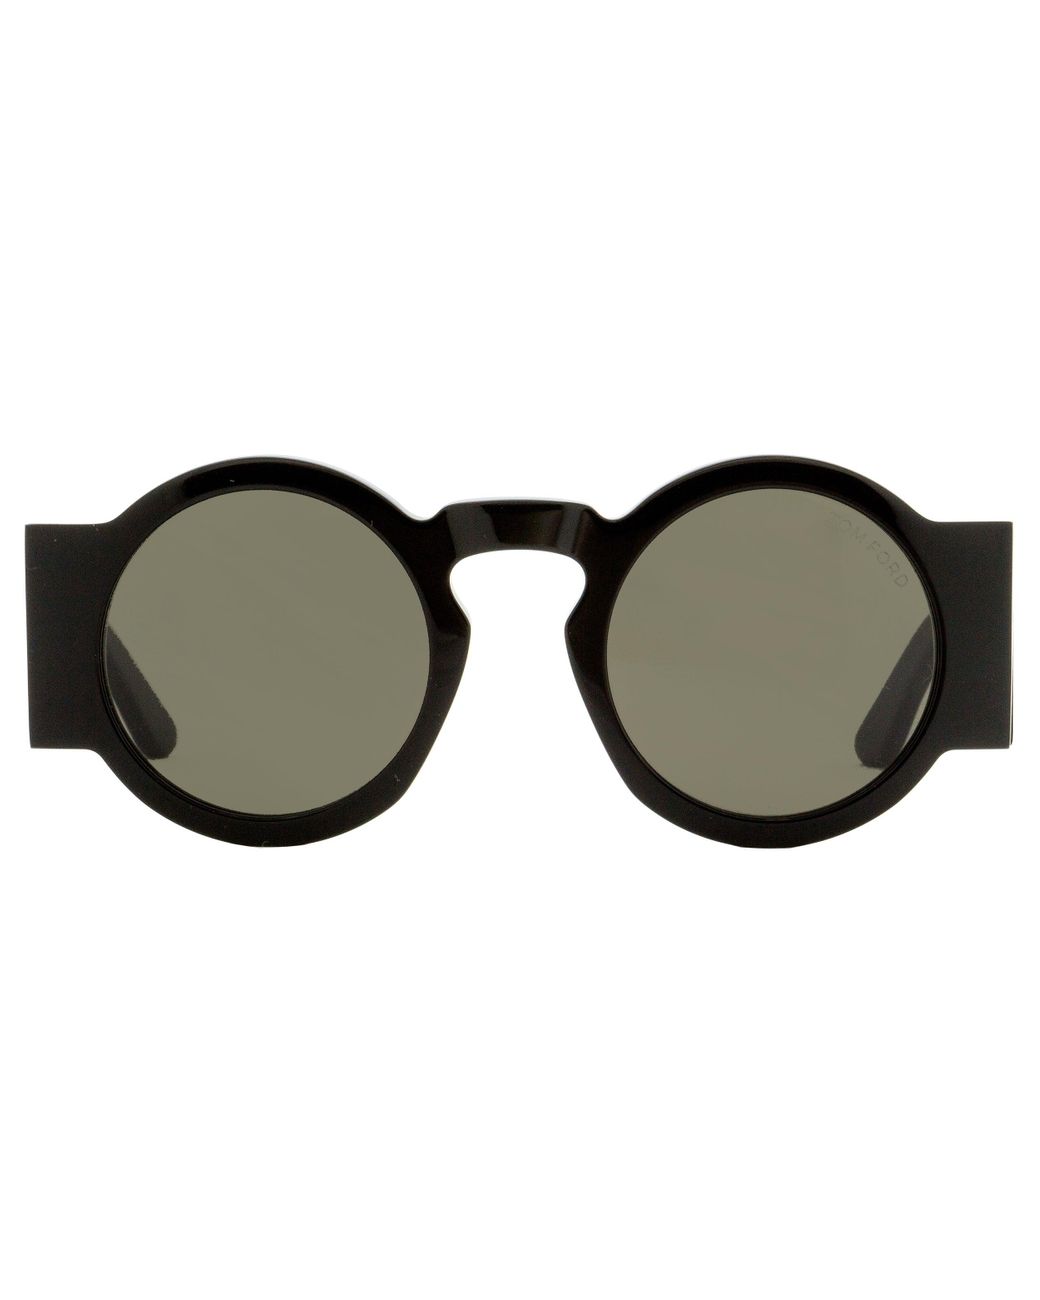 Tom Ford Round Sunglasses Tf603 Tatiana-02 Black 47mm | Lyst